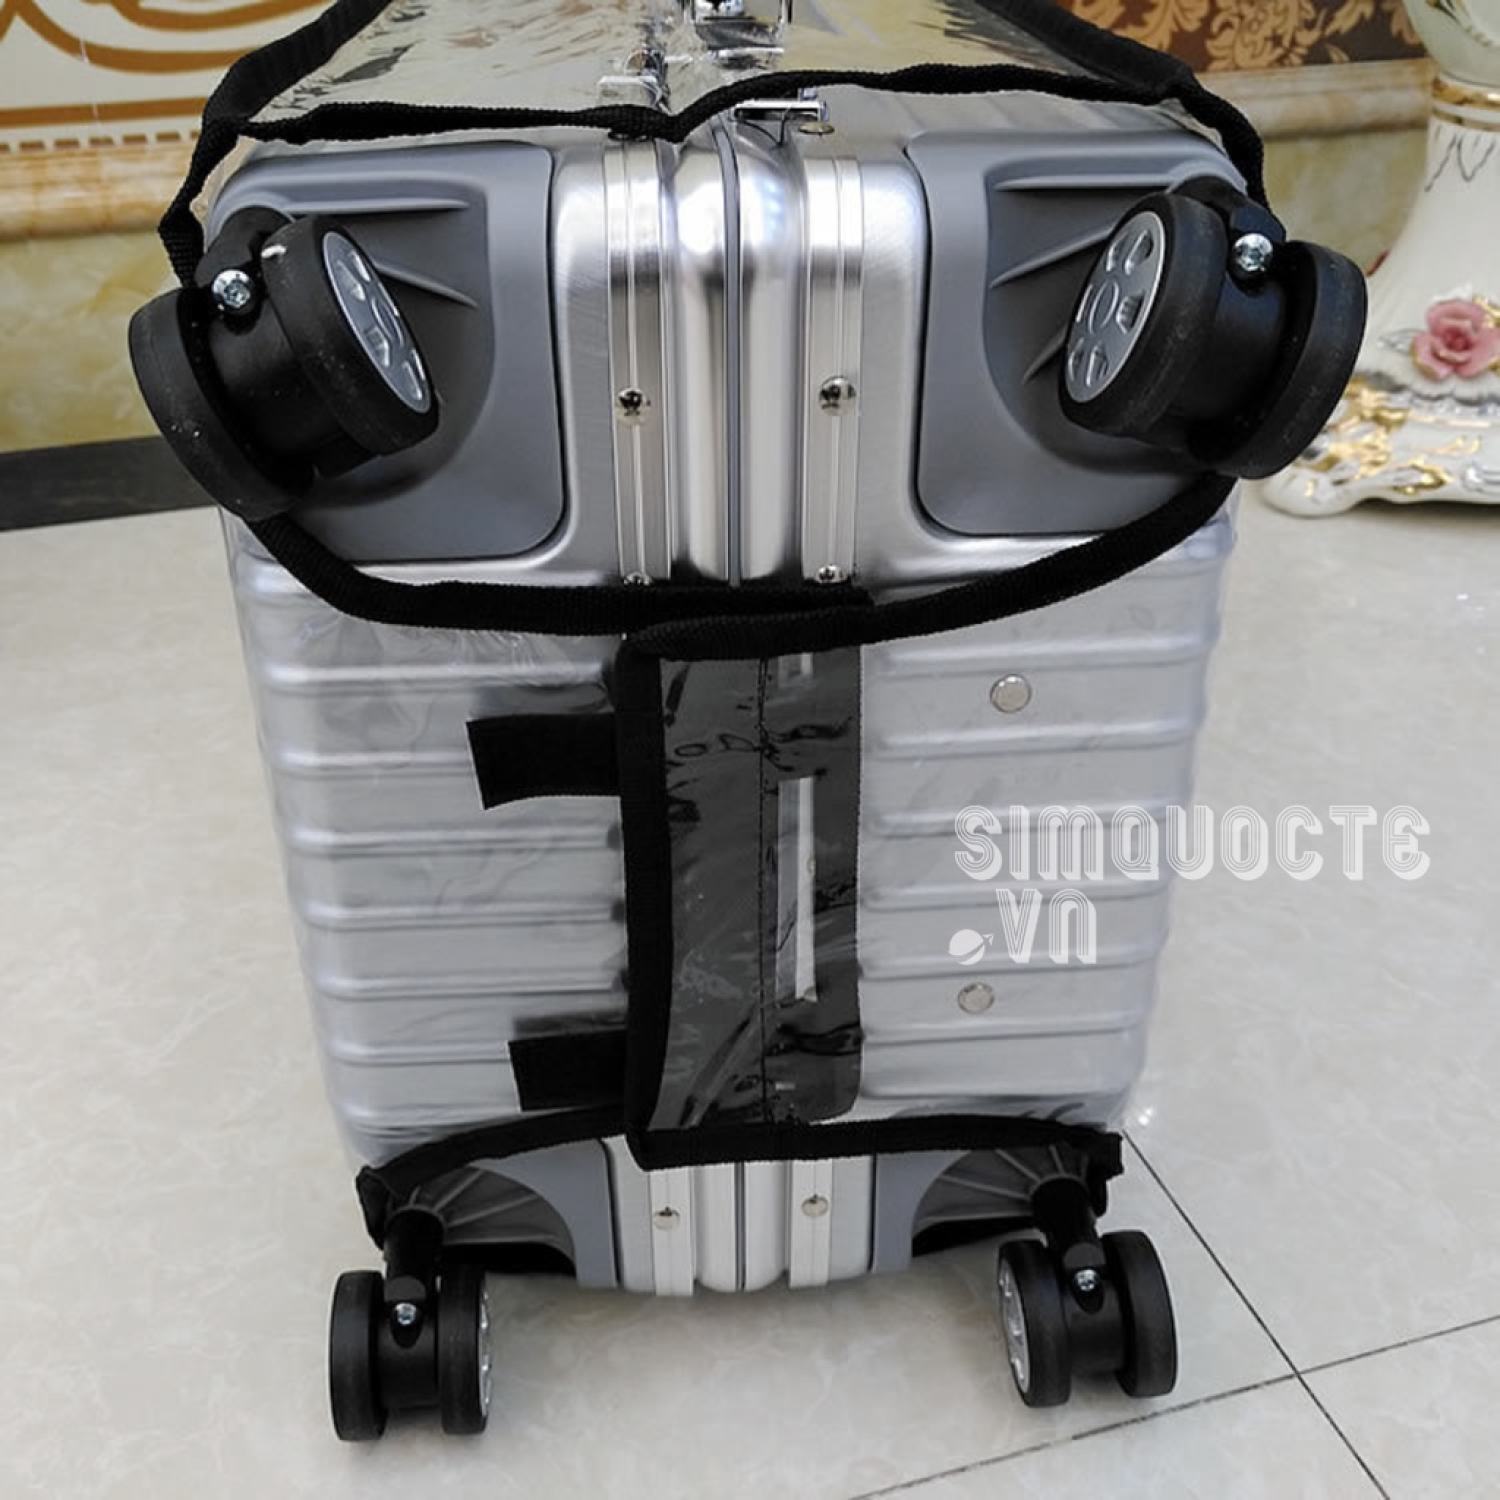 Vỏ bọc bảo vệ vali du lịch chất liệu nhựa PVC dày trong suốt chống chầy xước, chống lửa, chống...